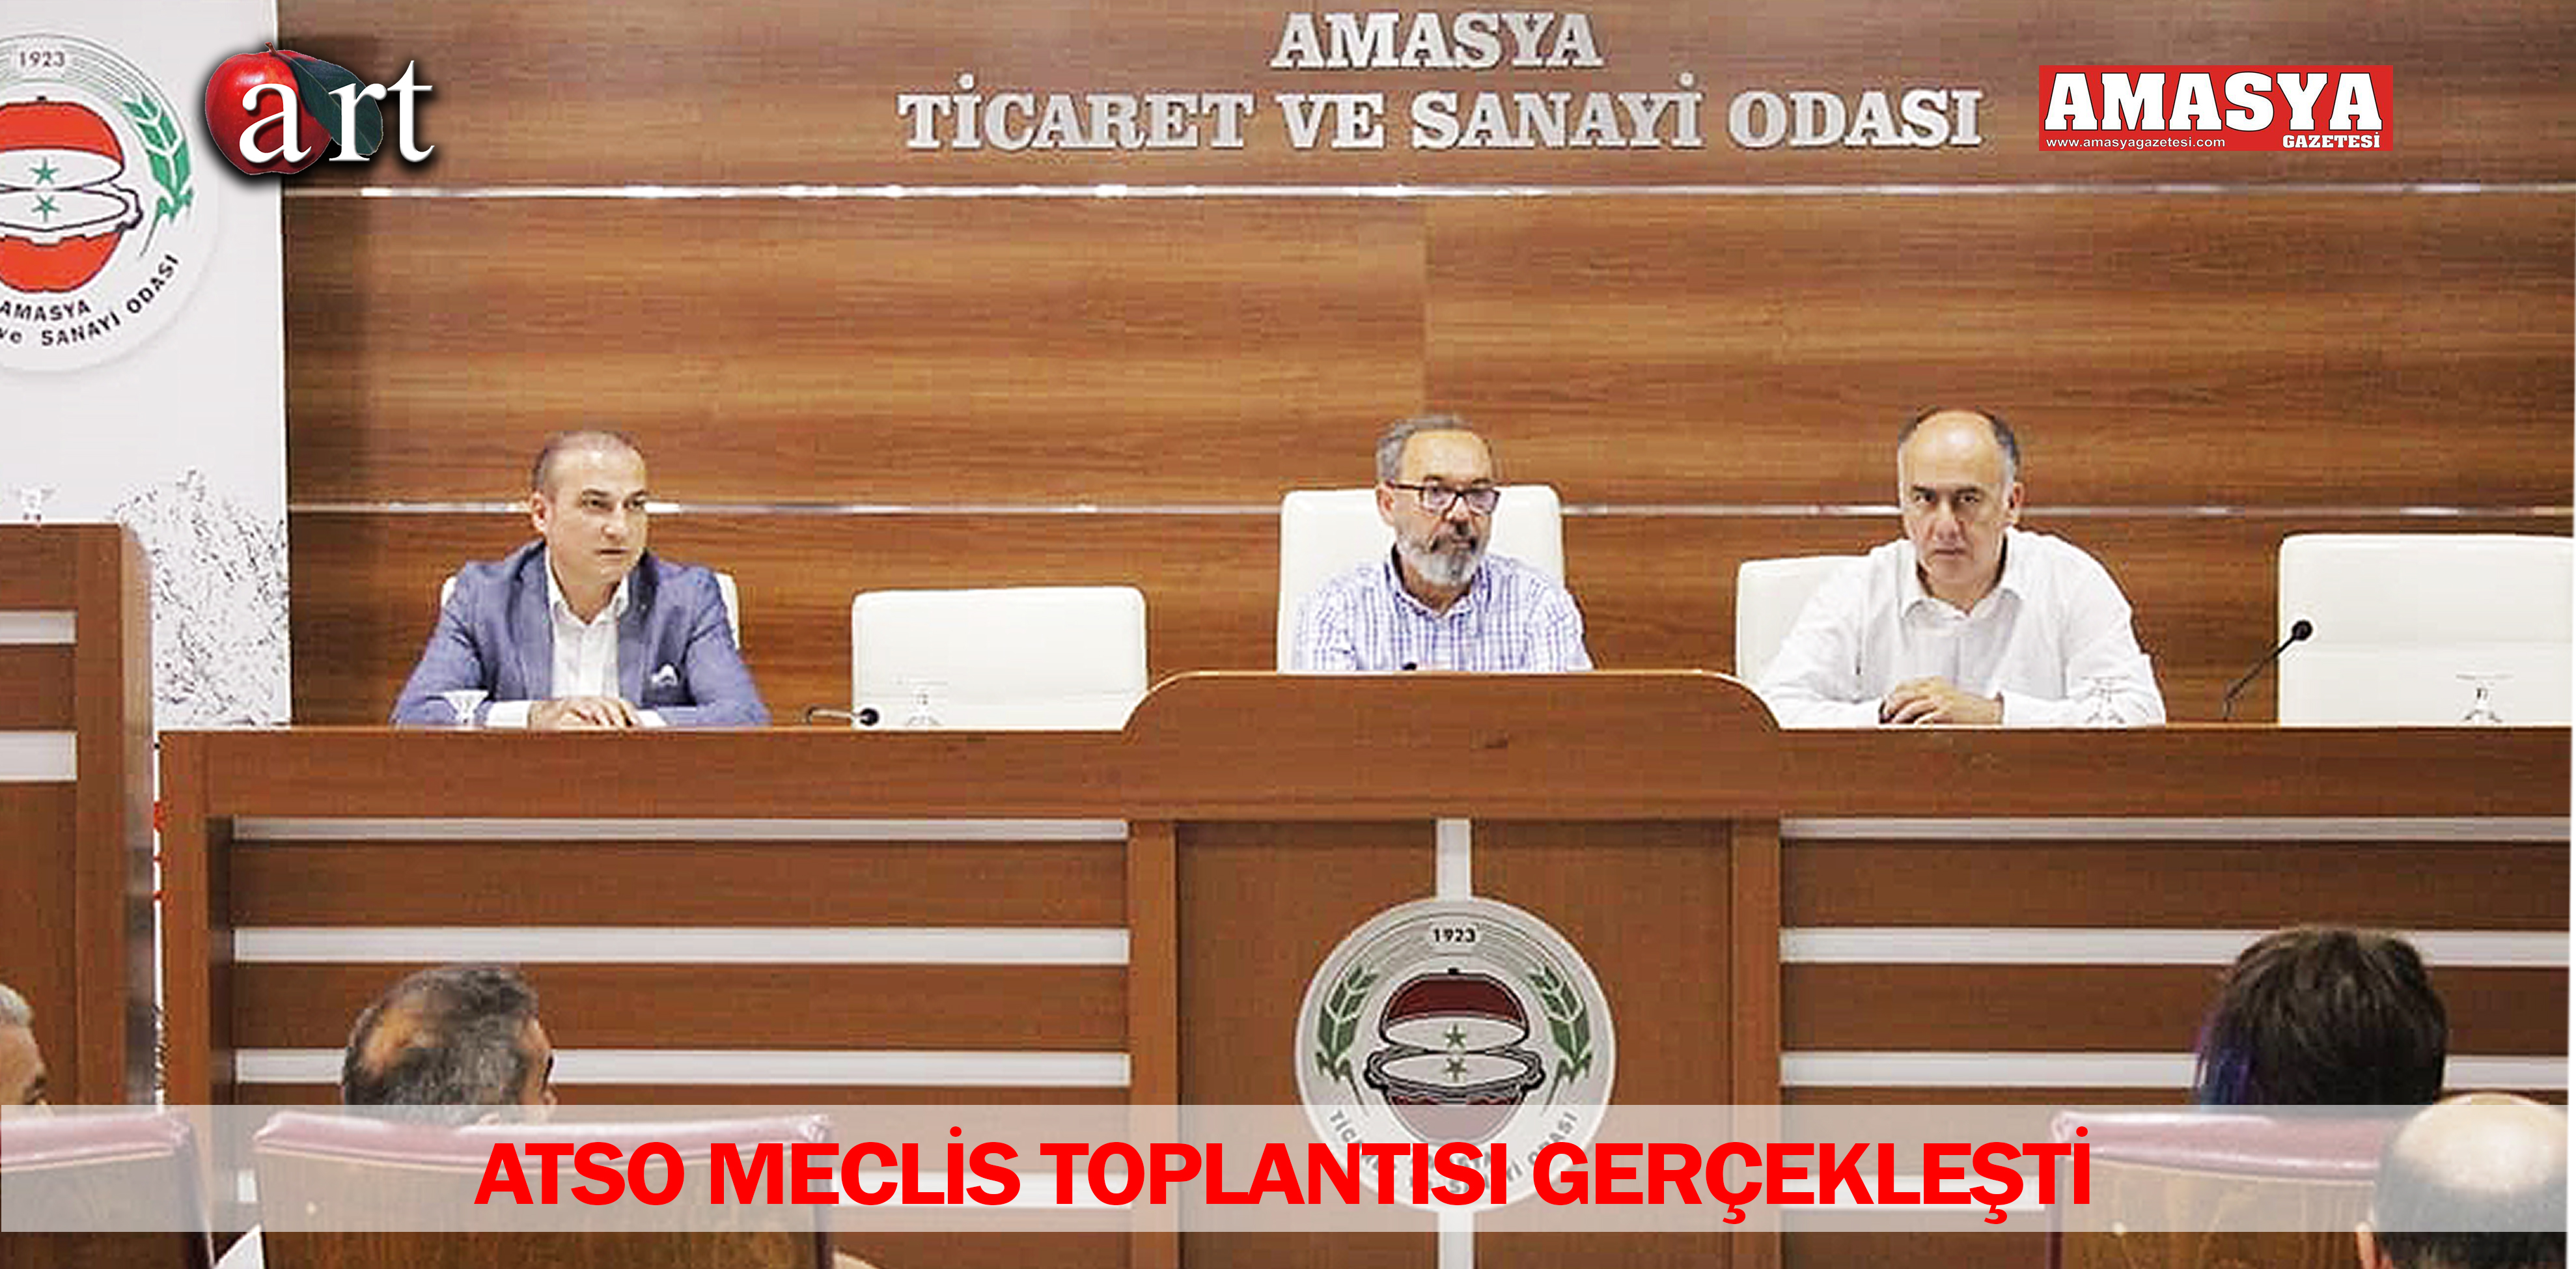 ATSO MECLİS TOPLANTISI GERÇEKLEŞTİ